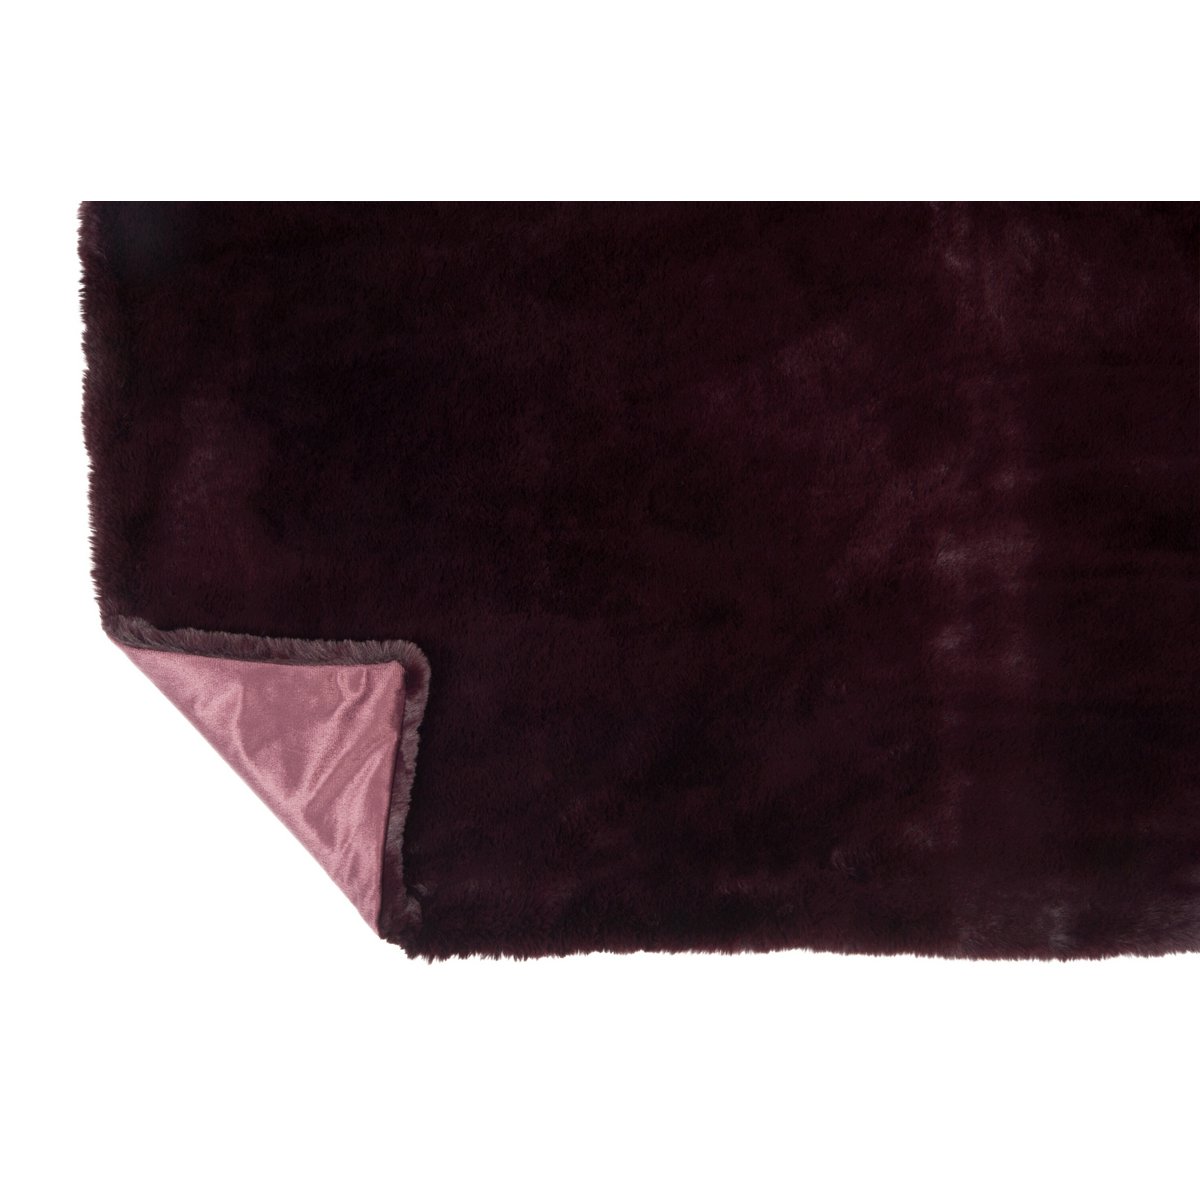 J-Line Plaid Cutie - Fleece Deken – Polyester – 180x130 cm – Donkerrood